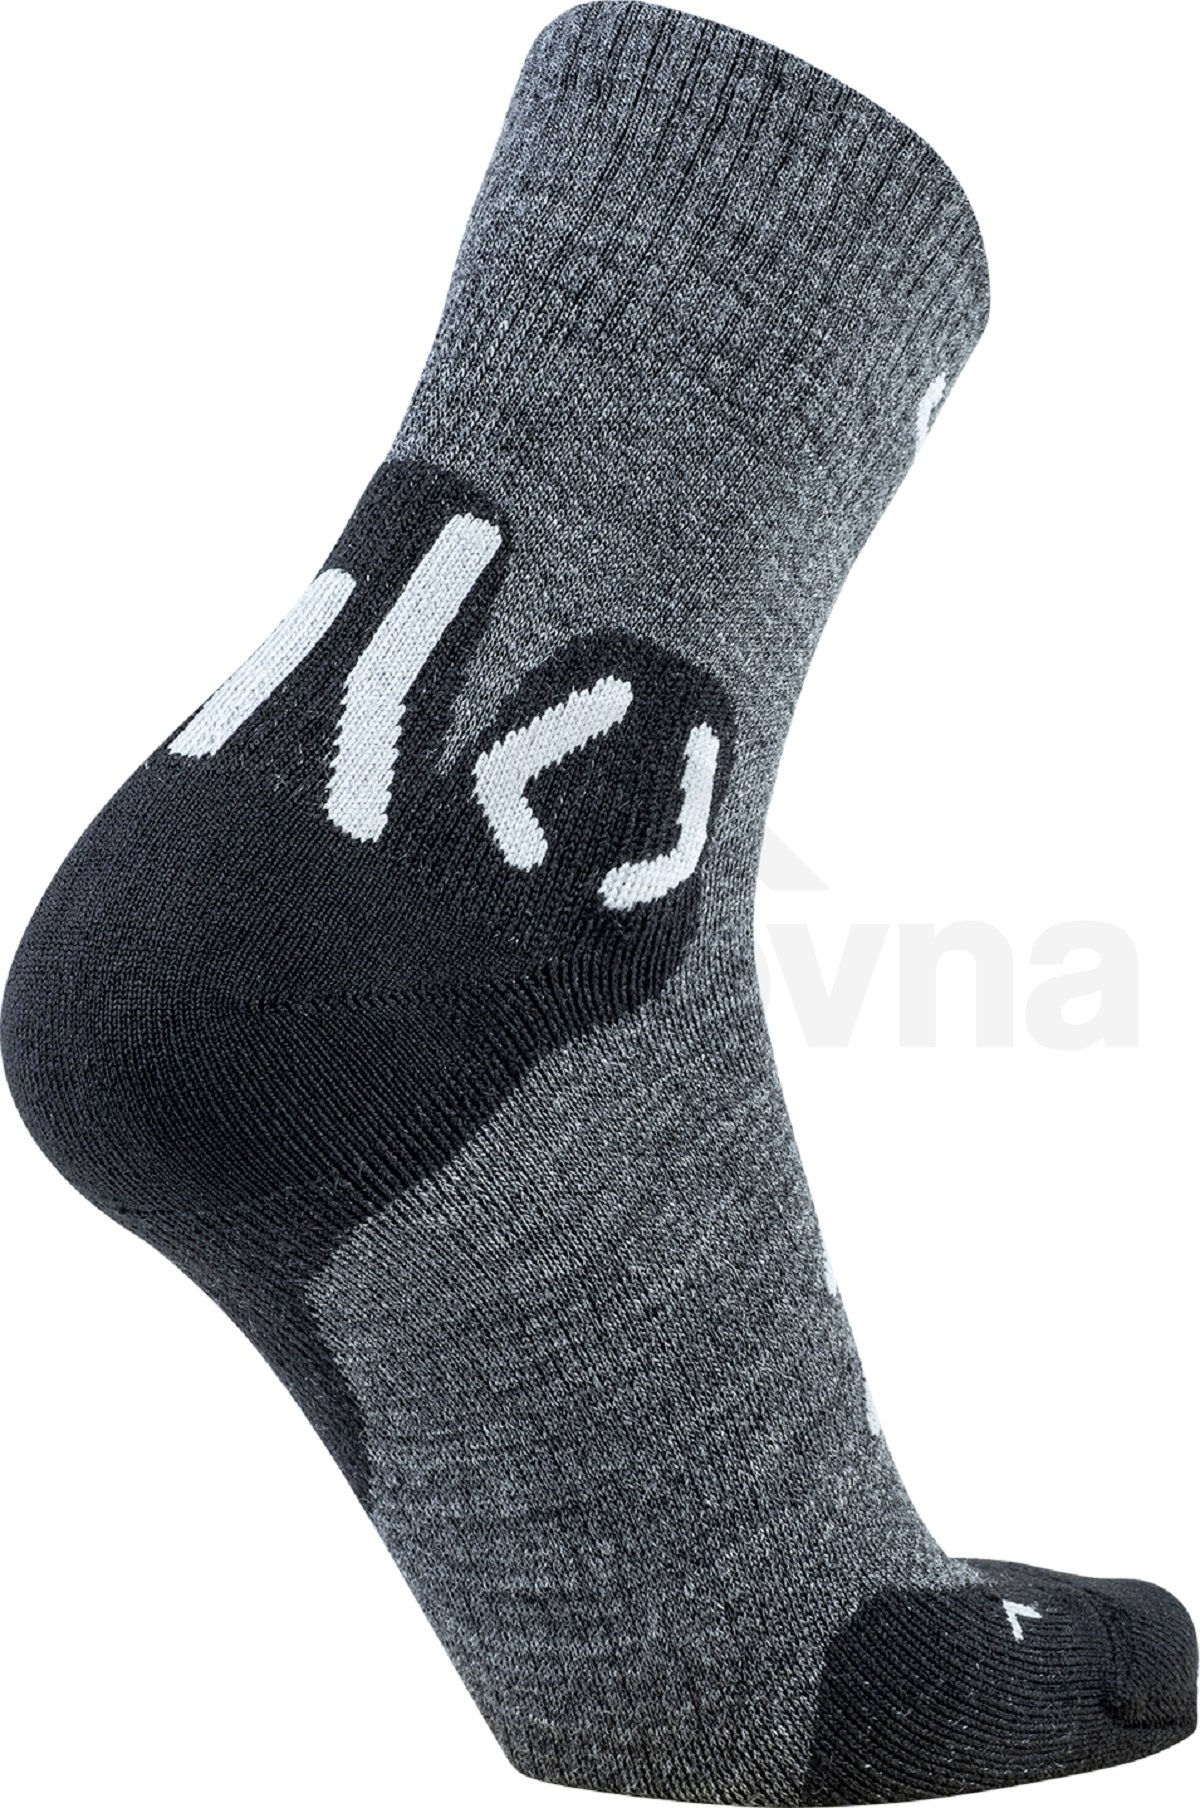 Ponožky UYN Trekking Approach Merino Mid Socks M - šedá/černá